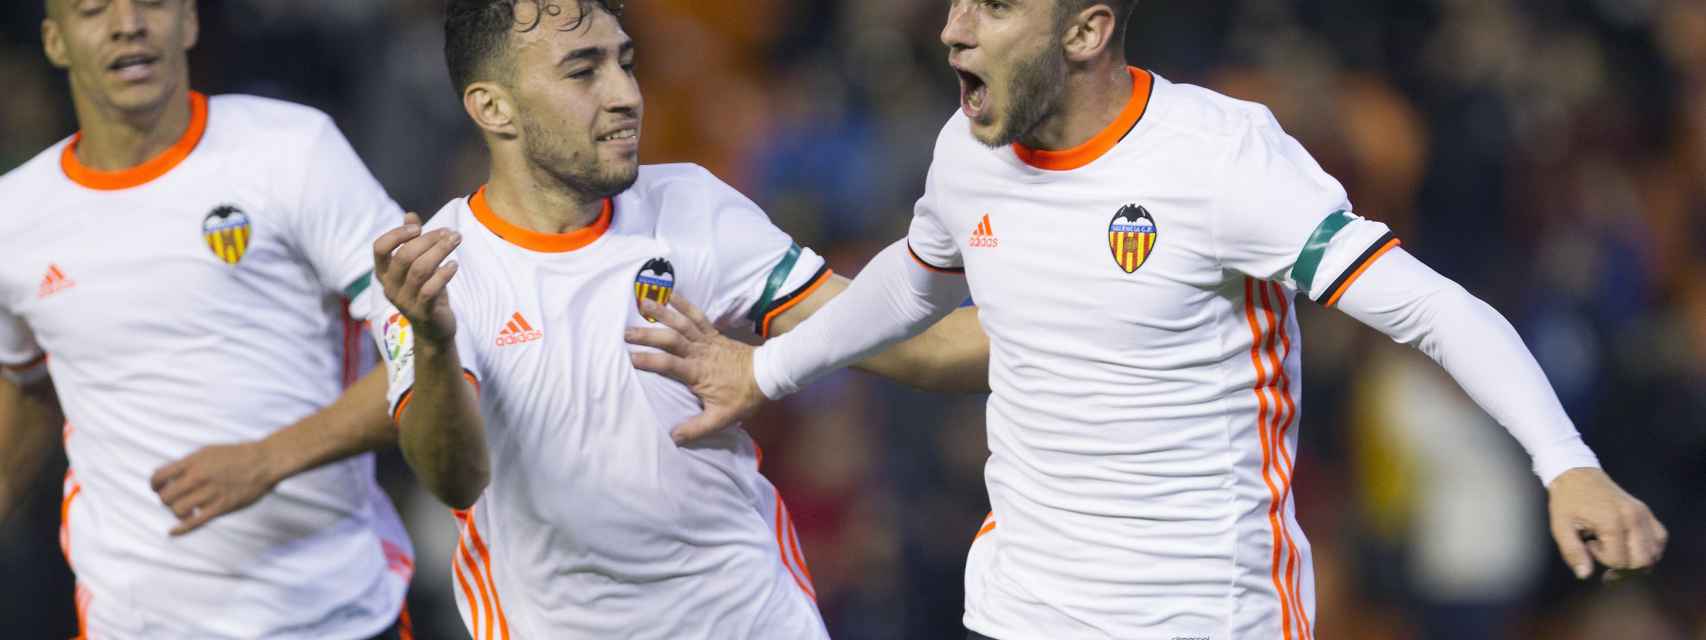 Los jugadores del Valencia celebran el gol de Medrán.